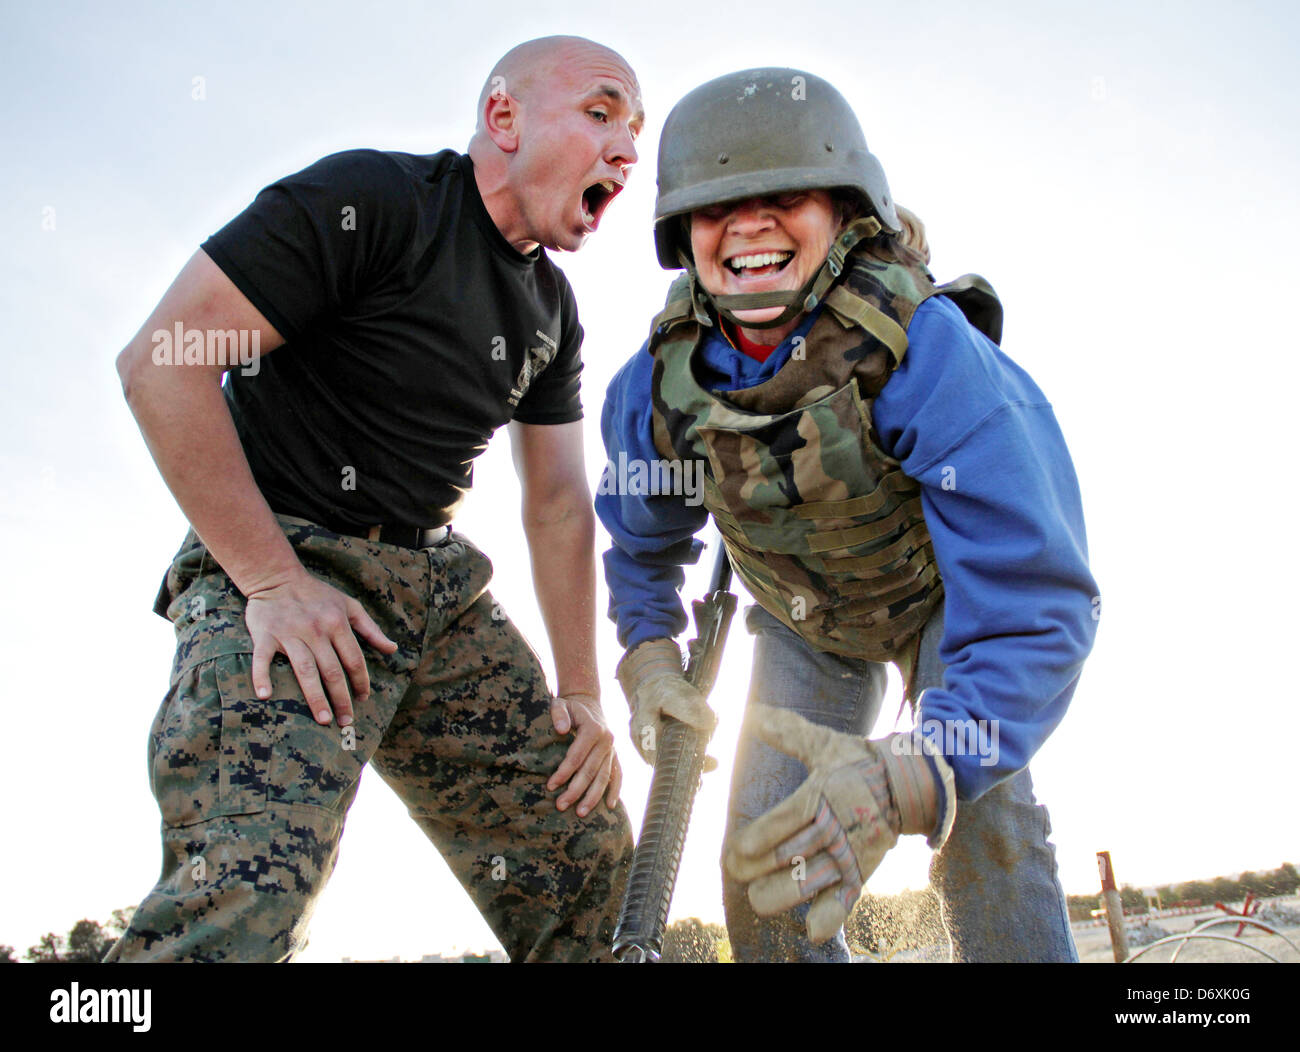 US Marine Corps taladro gritos en un civil instructores maestro que se ofrecieron voluntariamente para hacer frente a la agresión de bayoneta durante un taller de educadores en el Marine Corps contratar Depot el 29 de enero de 2013 en San Diego, CA. Foto de stock